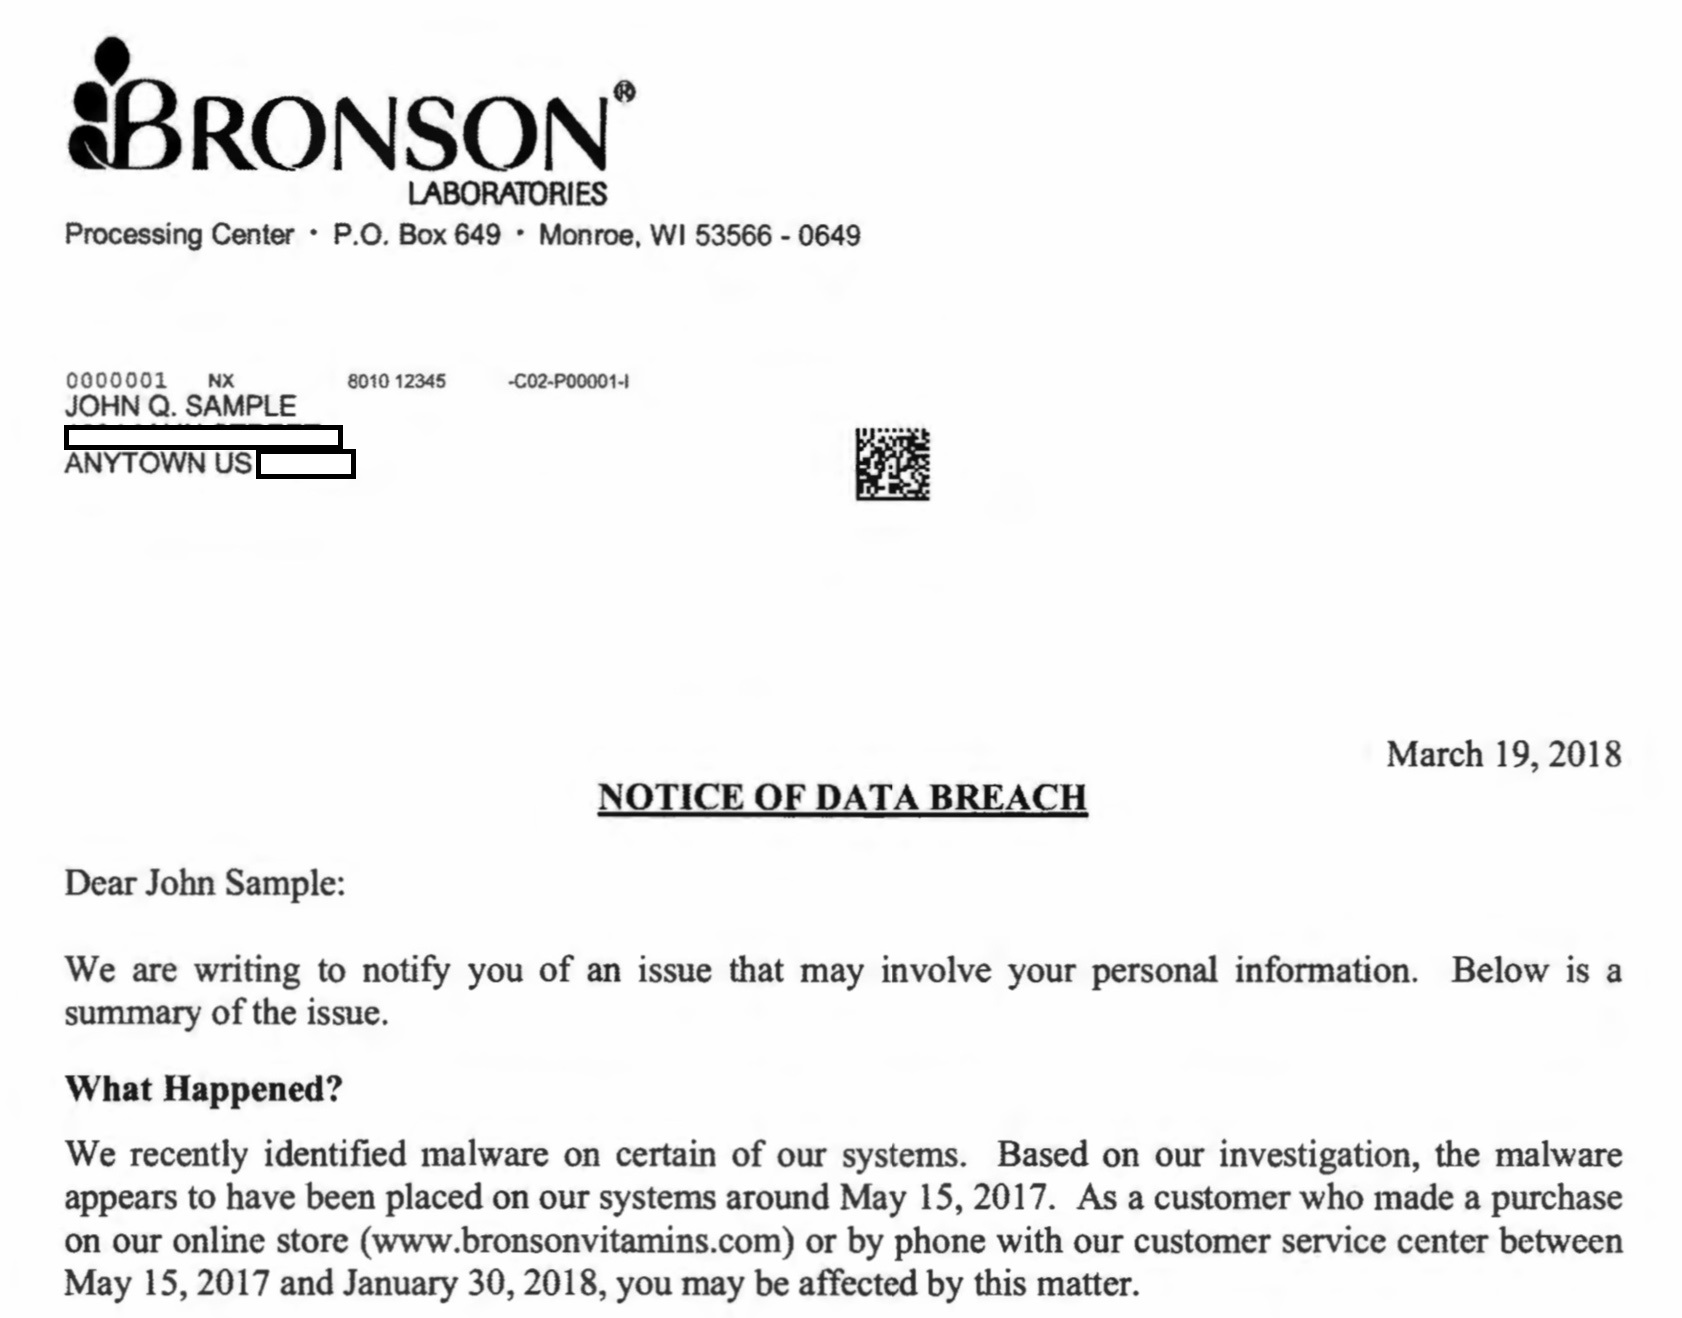 Bronson’s data breach